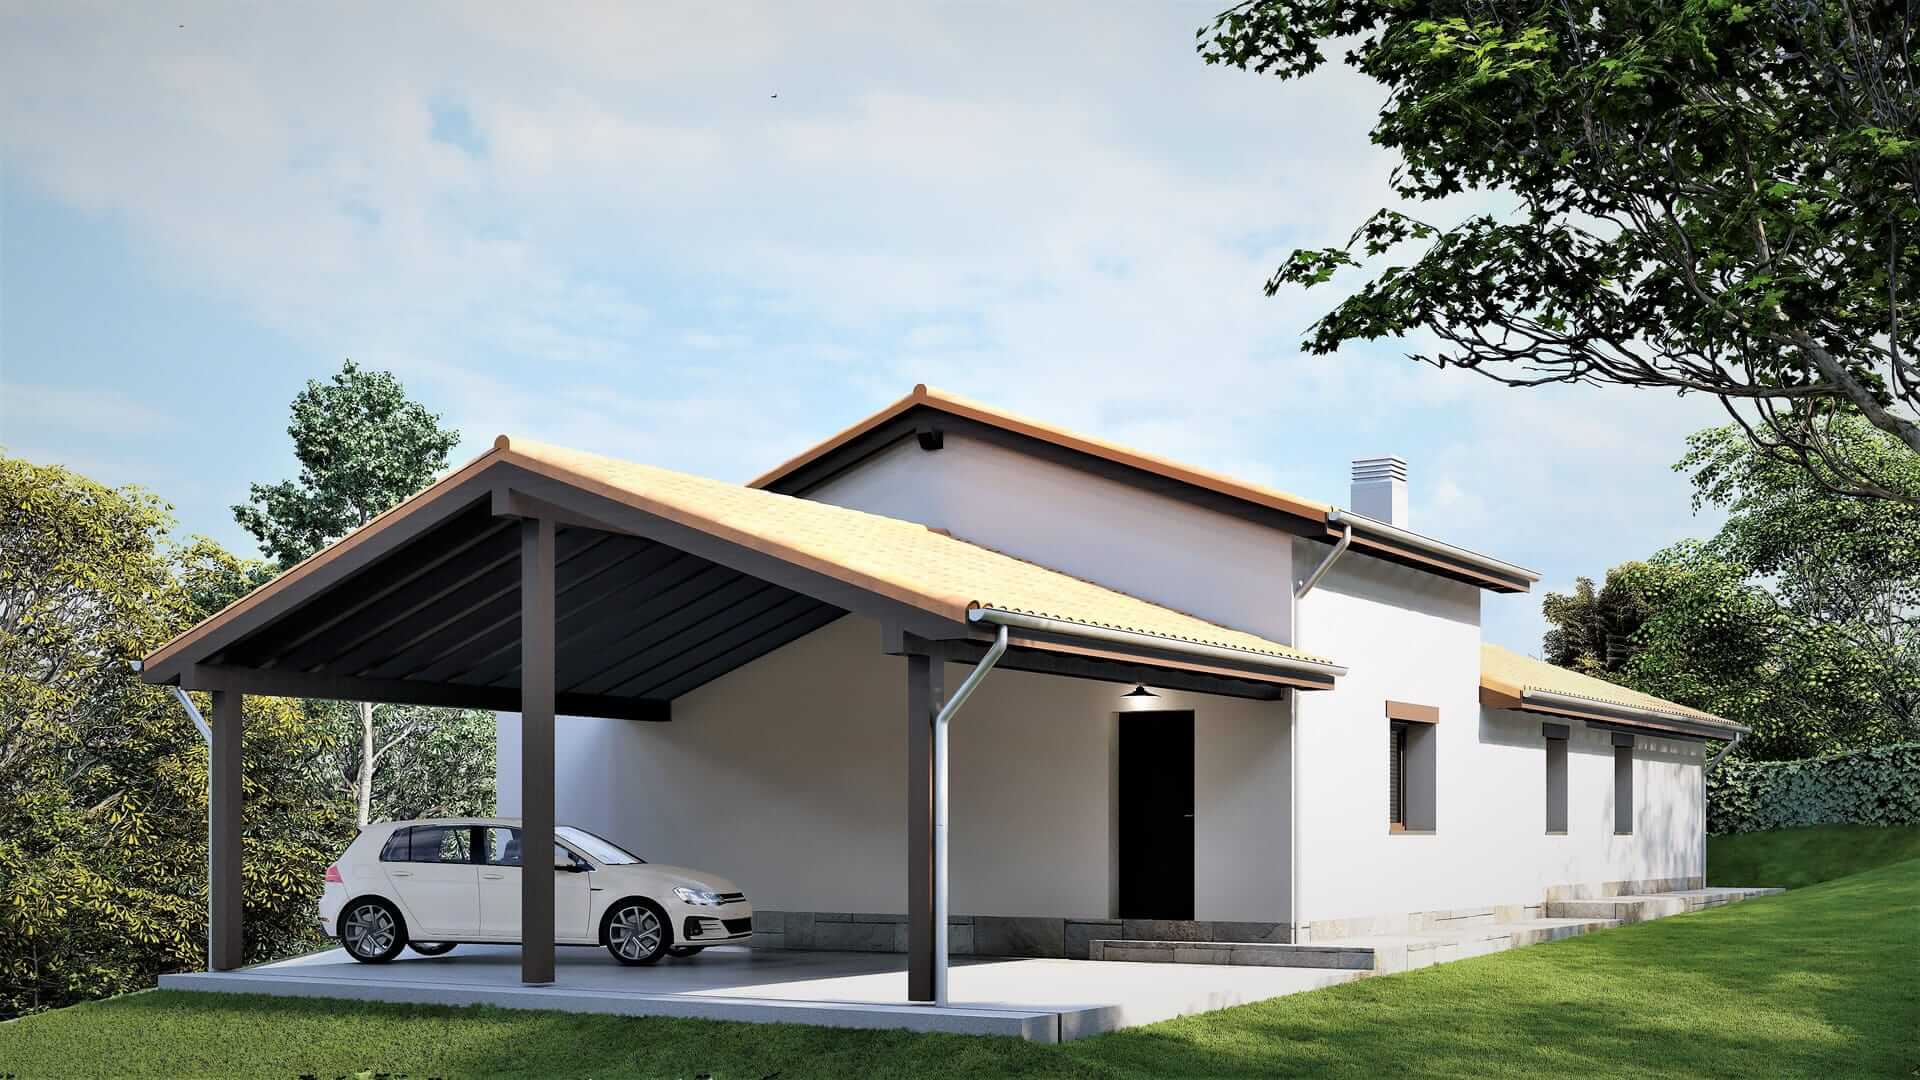 proyecto de vivienda nueva con garaje abierto y grandes ventanas